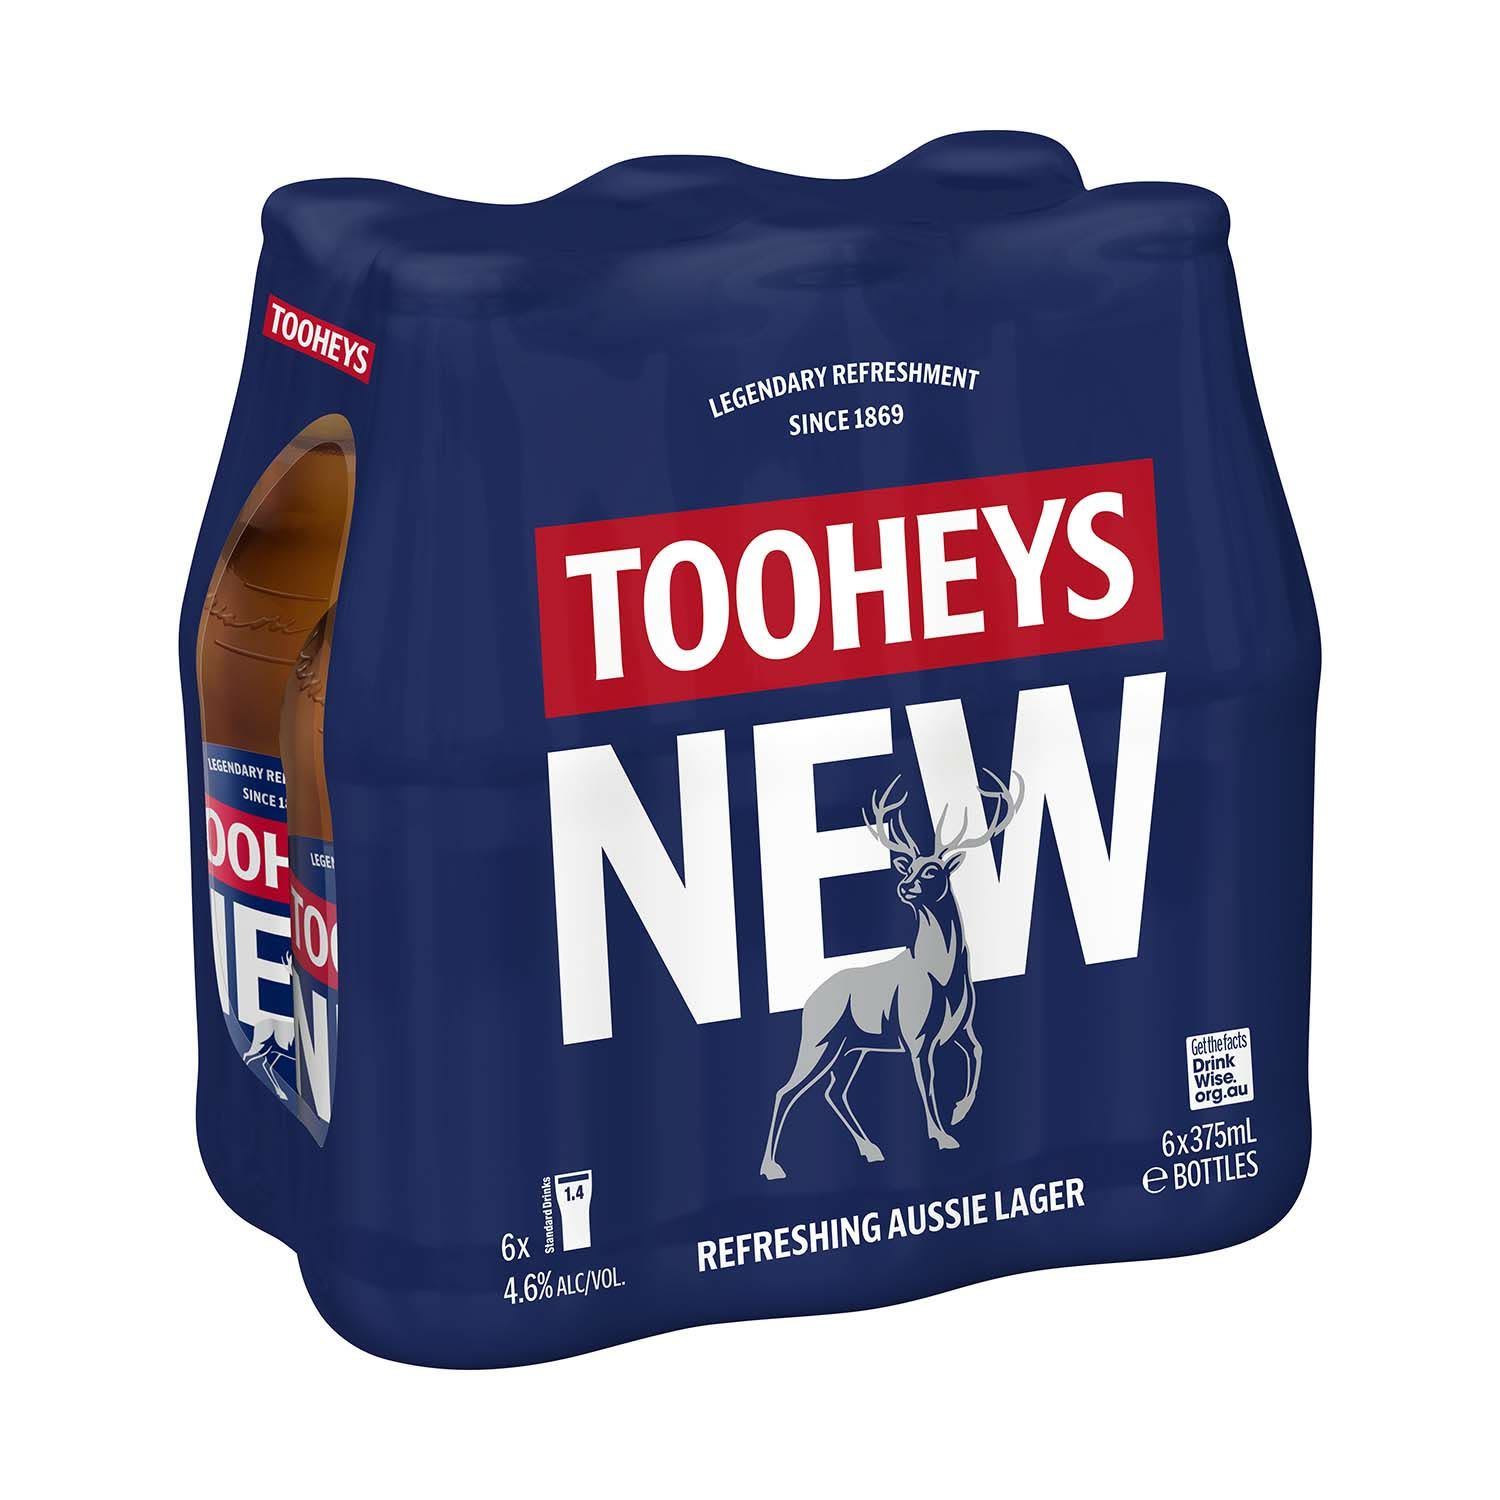 Tooheys New Bottle 375mL 6 Pack